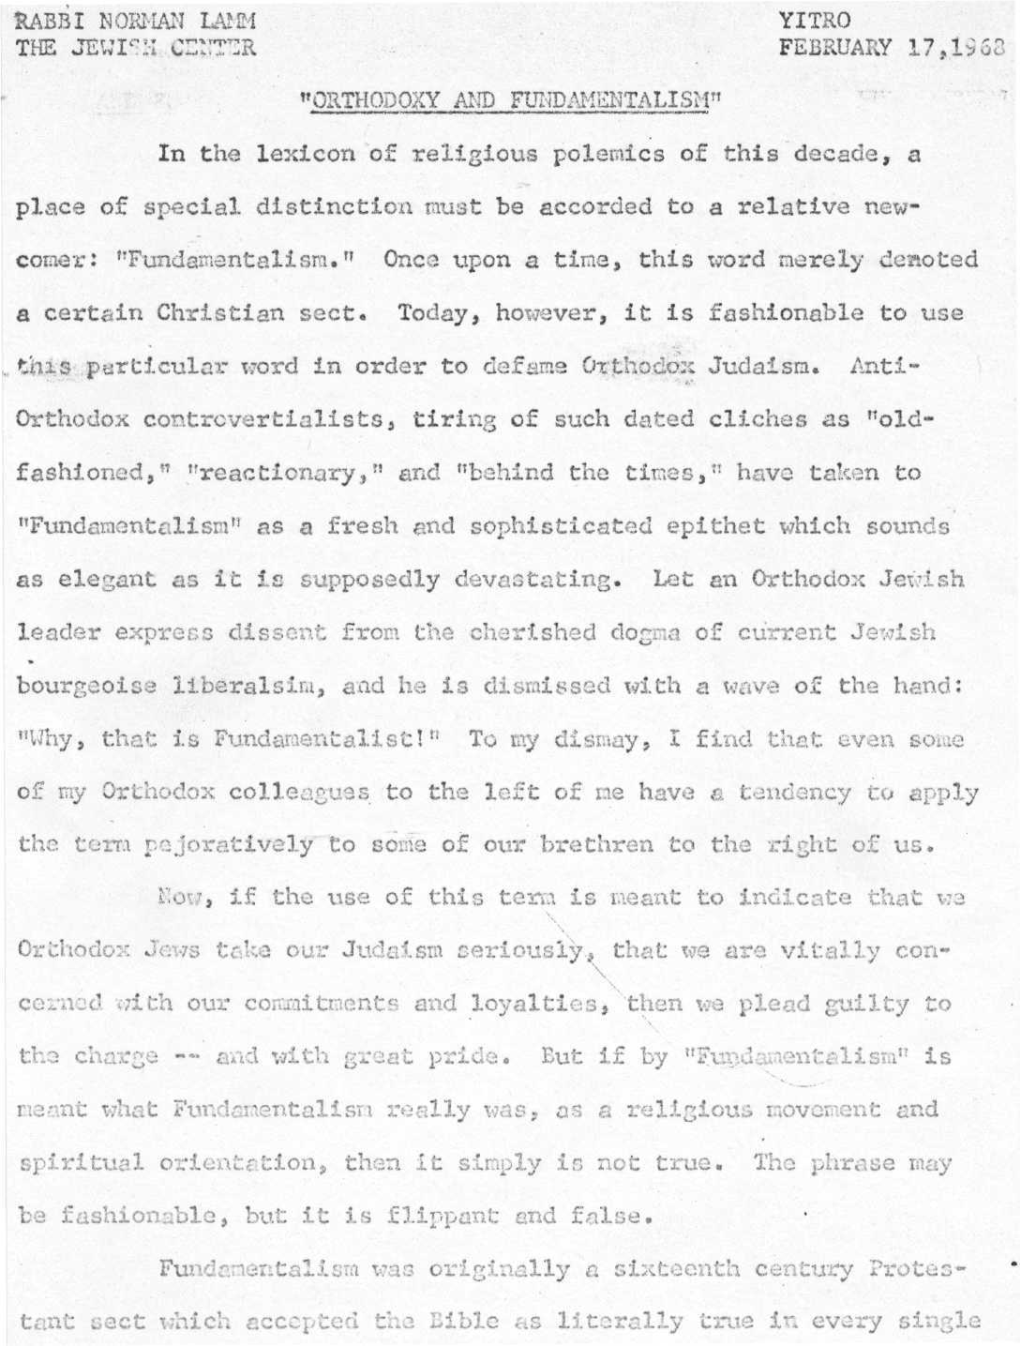 KABBI NOEHAN 1^1 YITRO the JEWISH Ci:::R:R FEBRUARY 17,1963 "ORTHODOXY and FUIID^IHHTALISH"